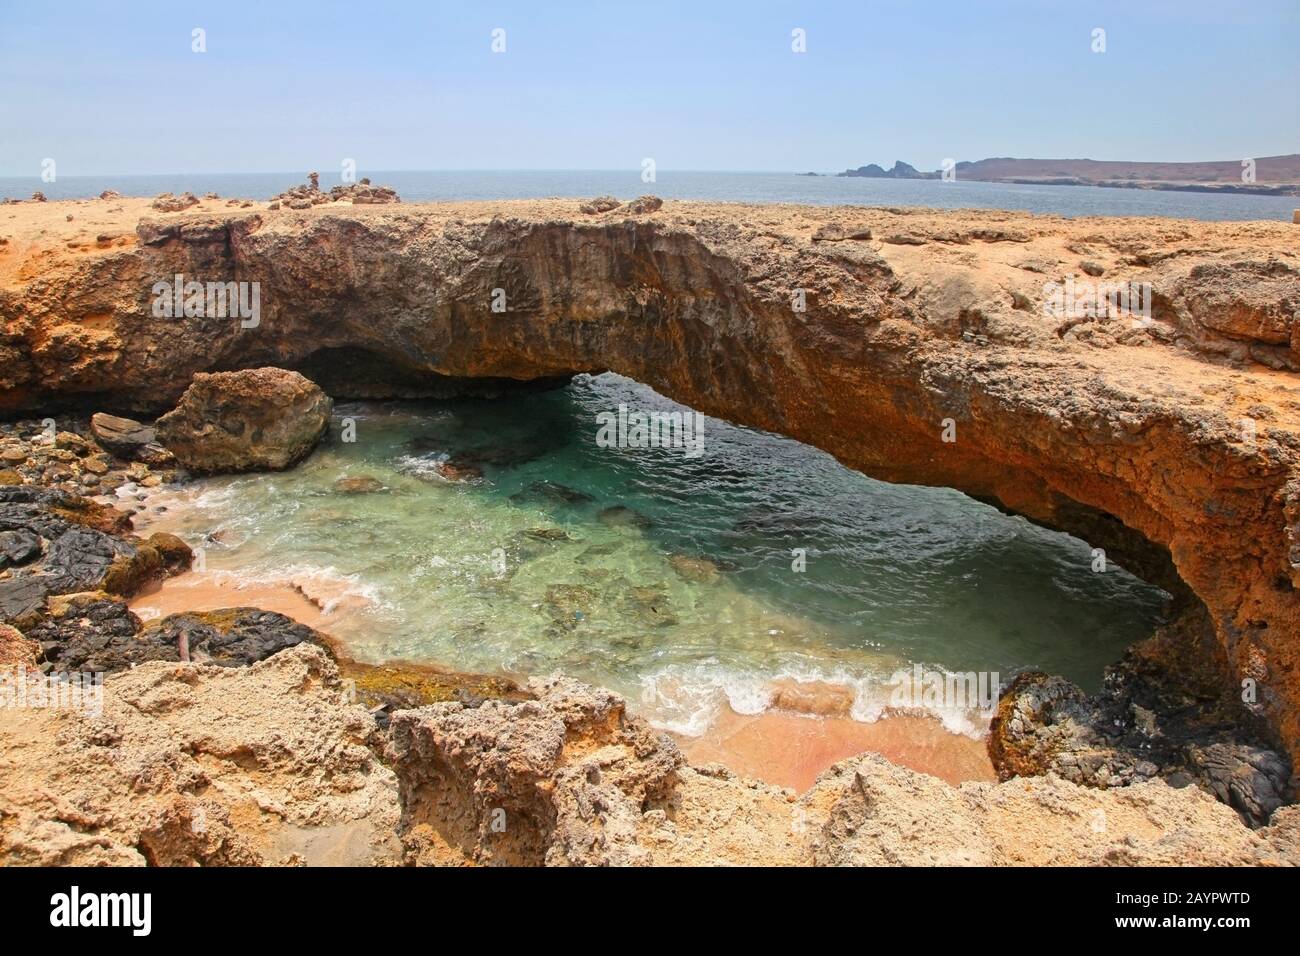 Pont naturel, formé de calcaire de corail, Aruba, Lesser Antiles, Caraïbes. Banque D'Images